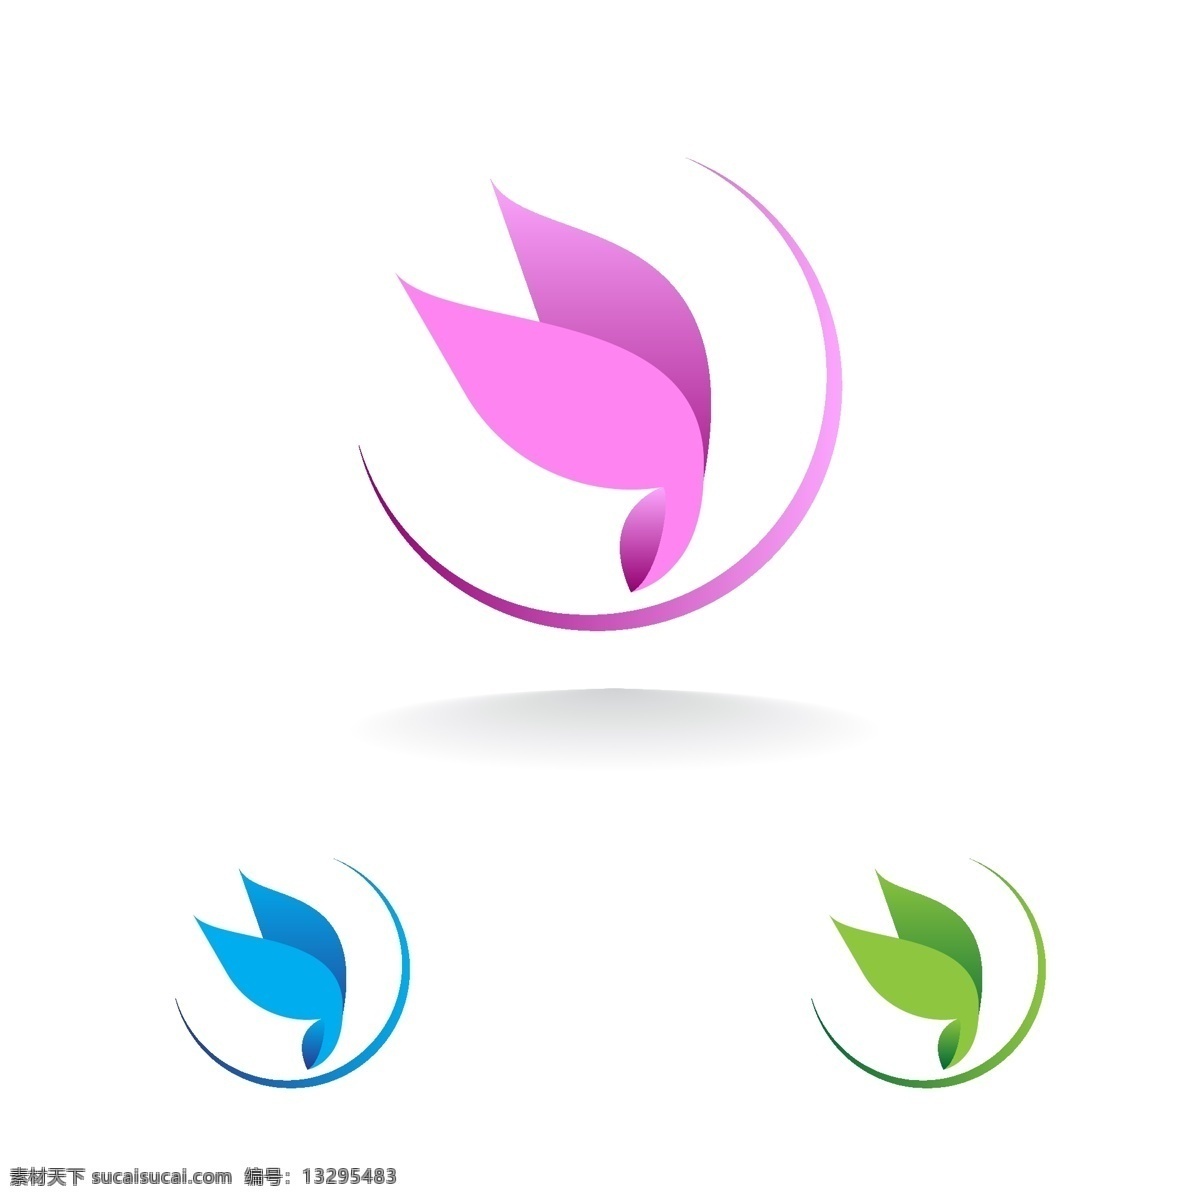 蝴蝶logo 蝴蝶 标志 创意logo logo 图形logo 简约logo 大气logo logo设计